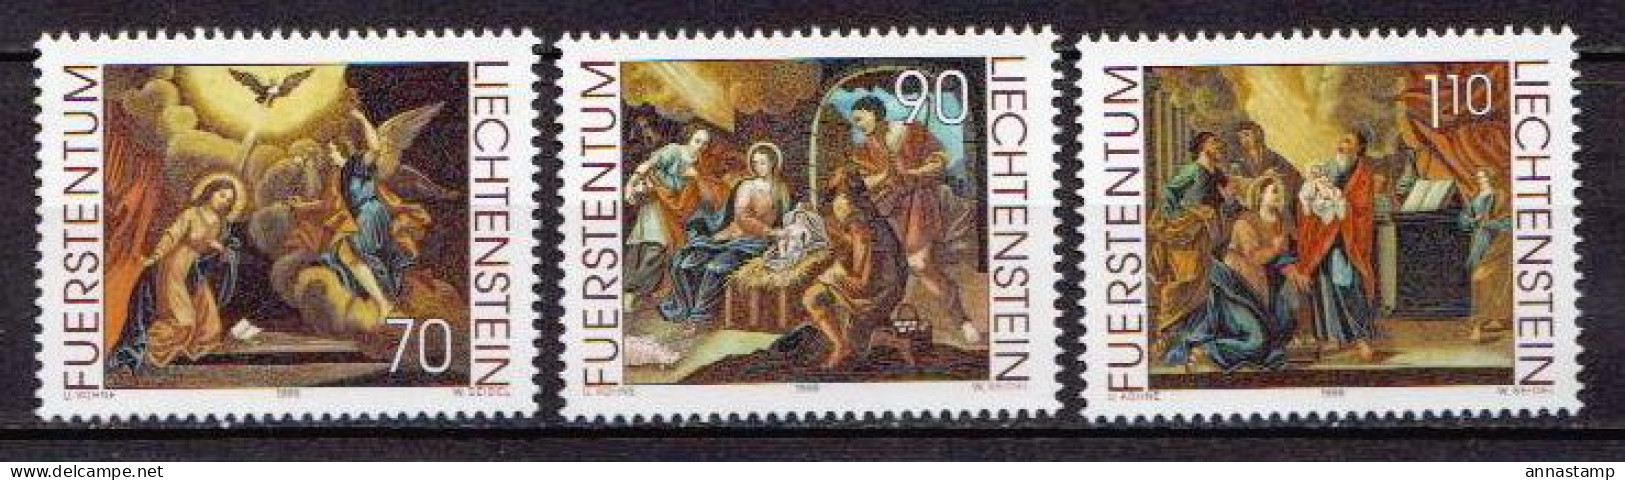 Liechtenstein MNH Set - Christmas